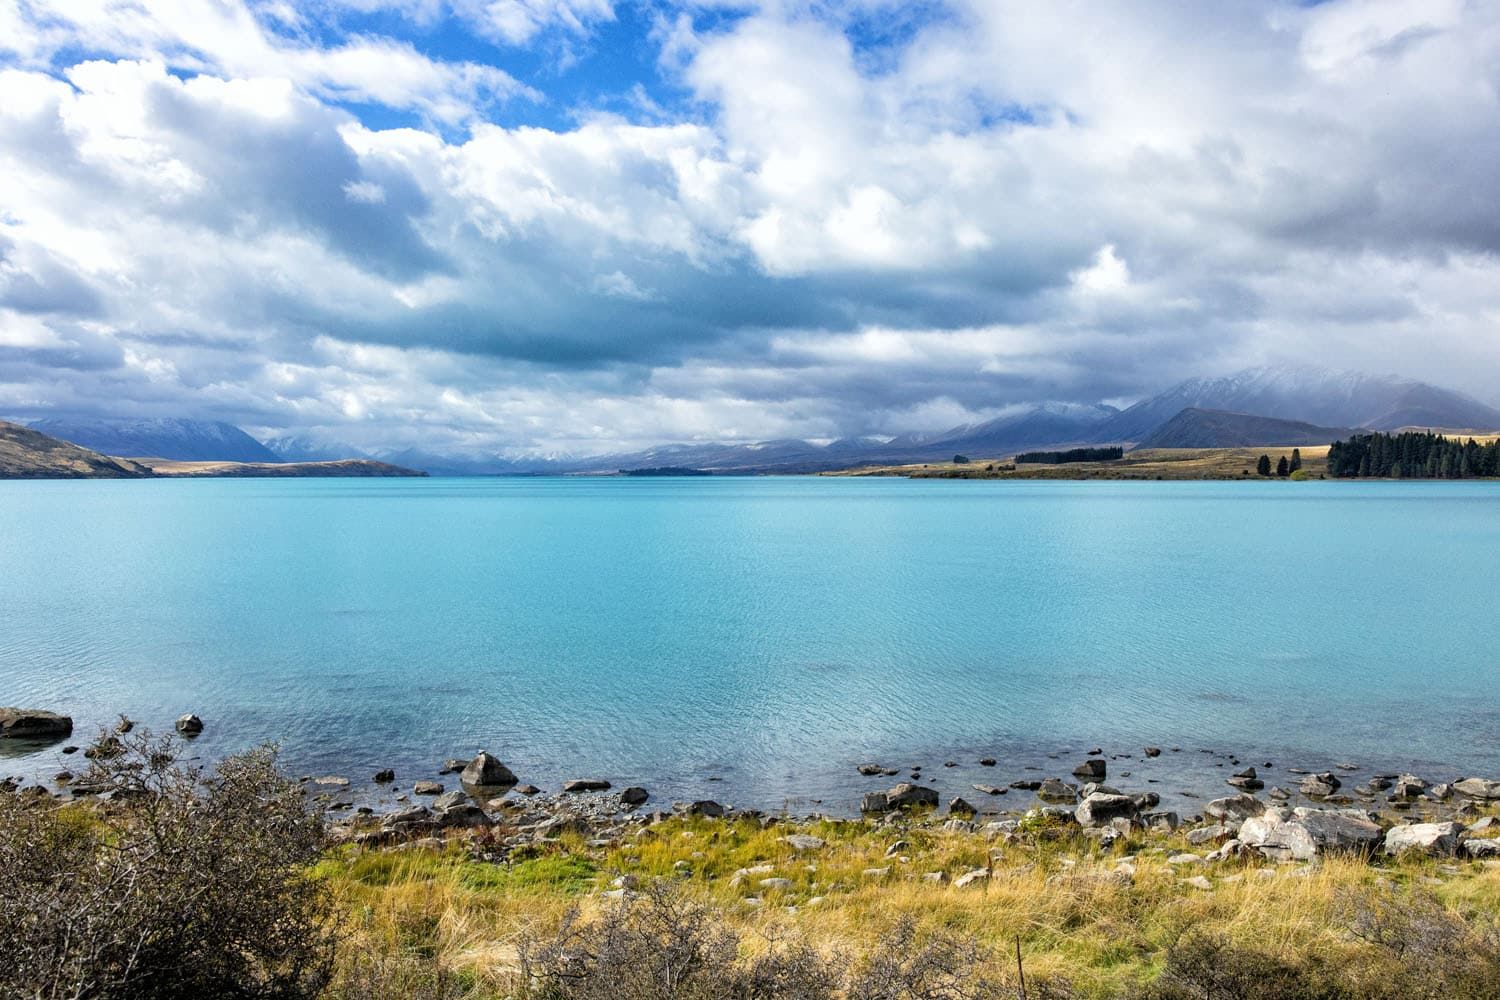 Lake Tekapo New Zealand | One Week on the South Island